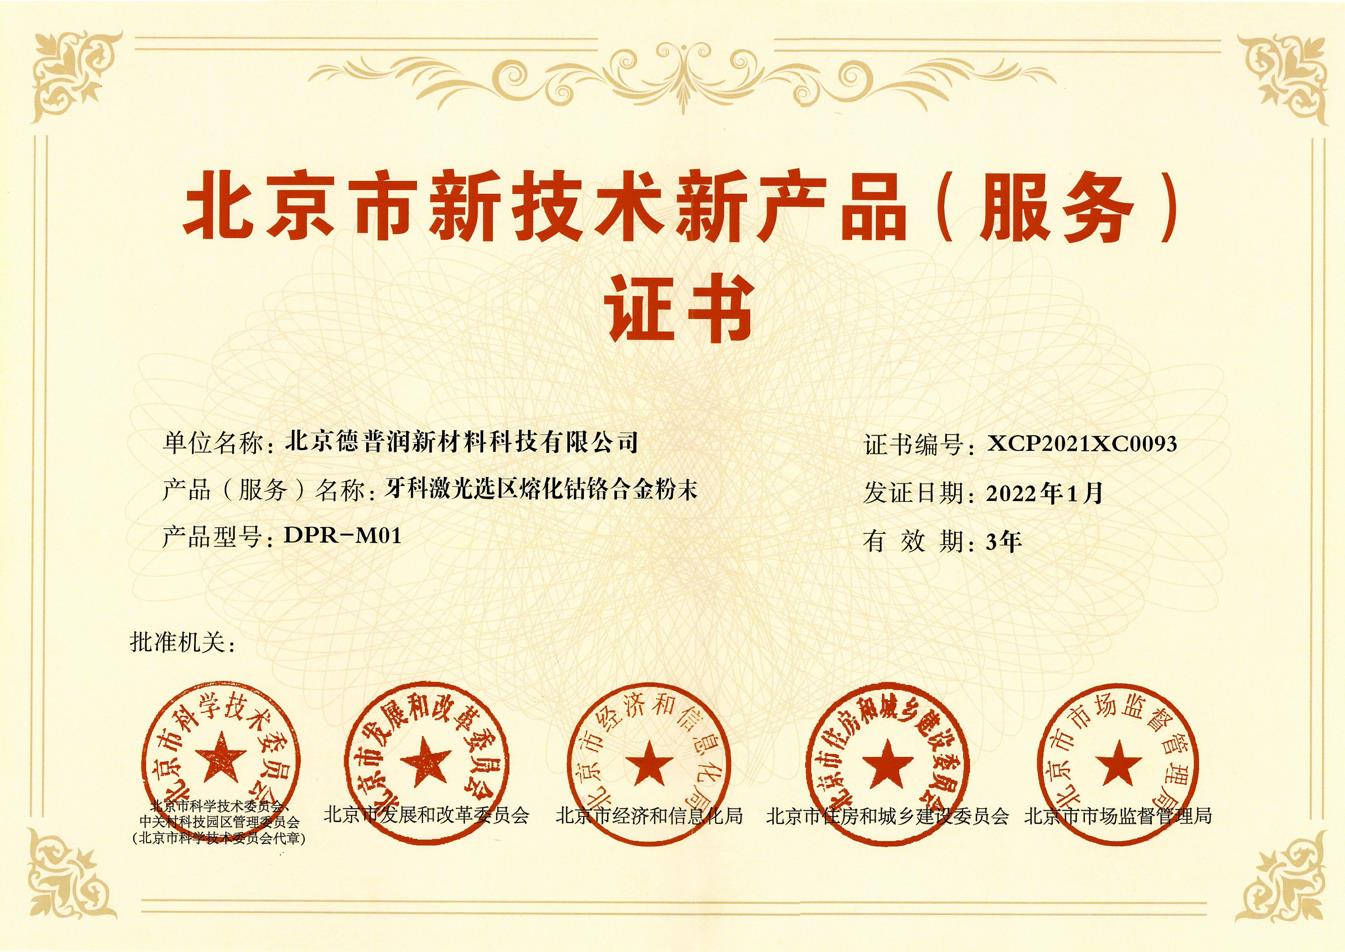 恭喜德普润DPR-M01获得《北京市新技术新产品（服务）证书》